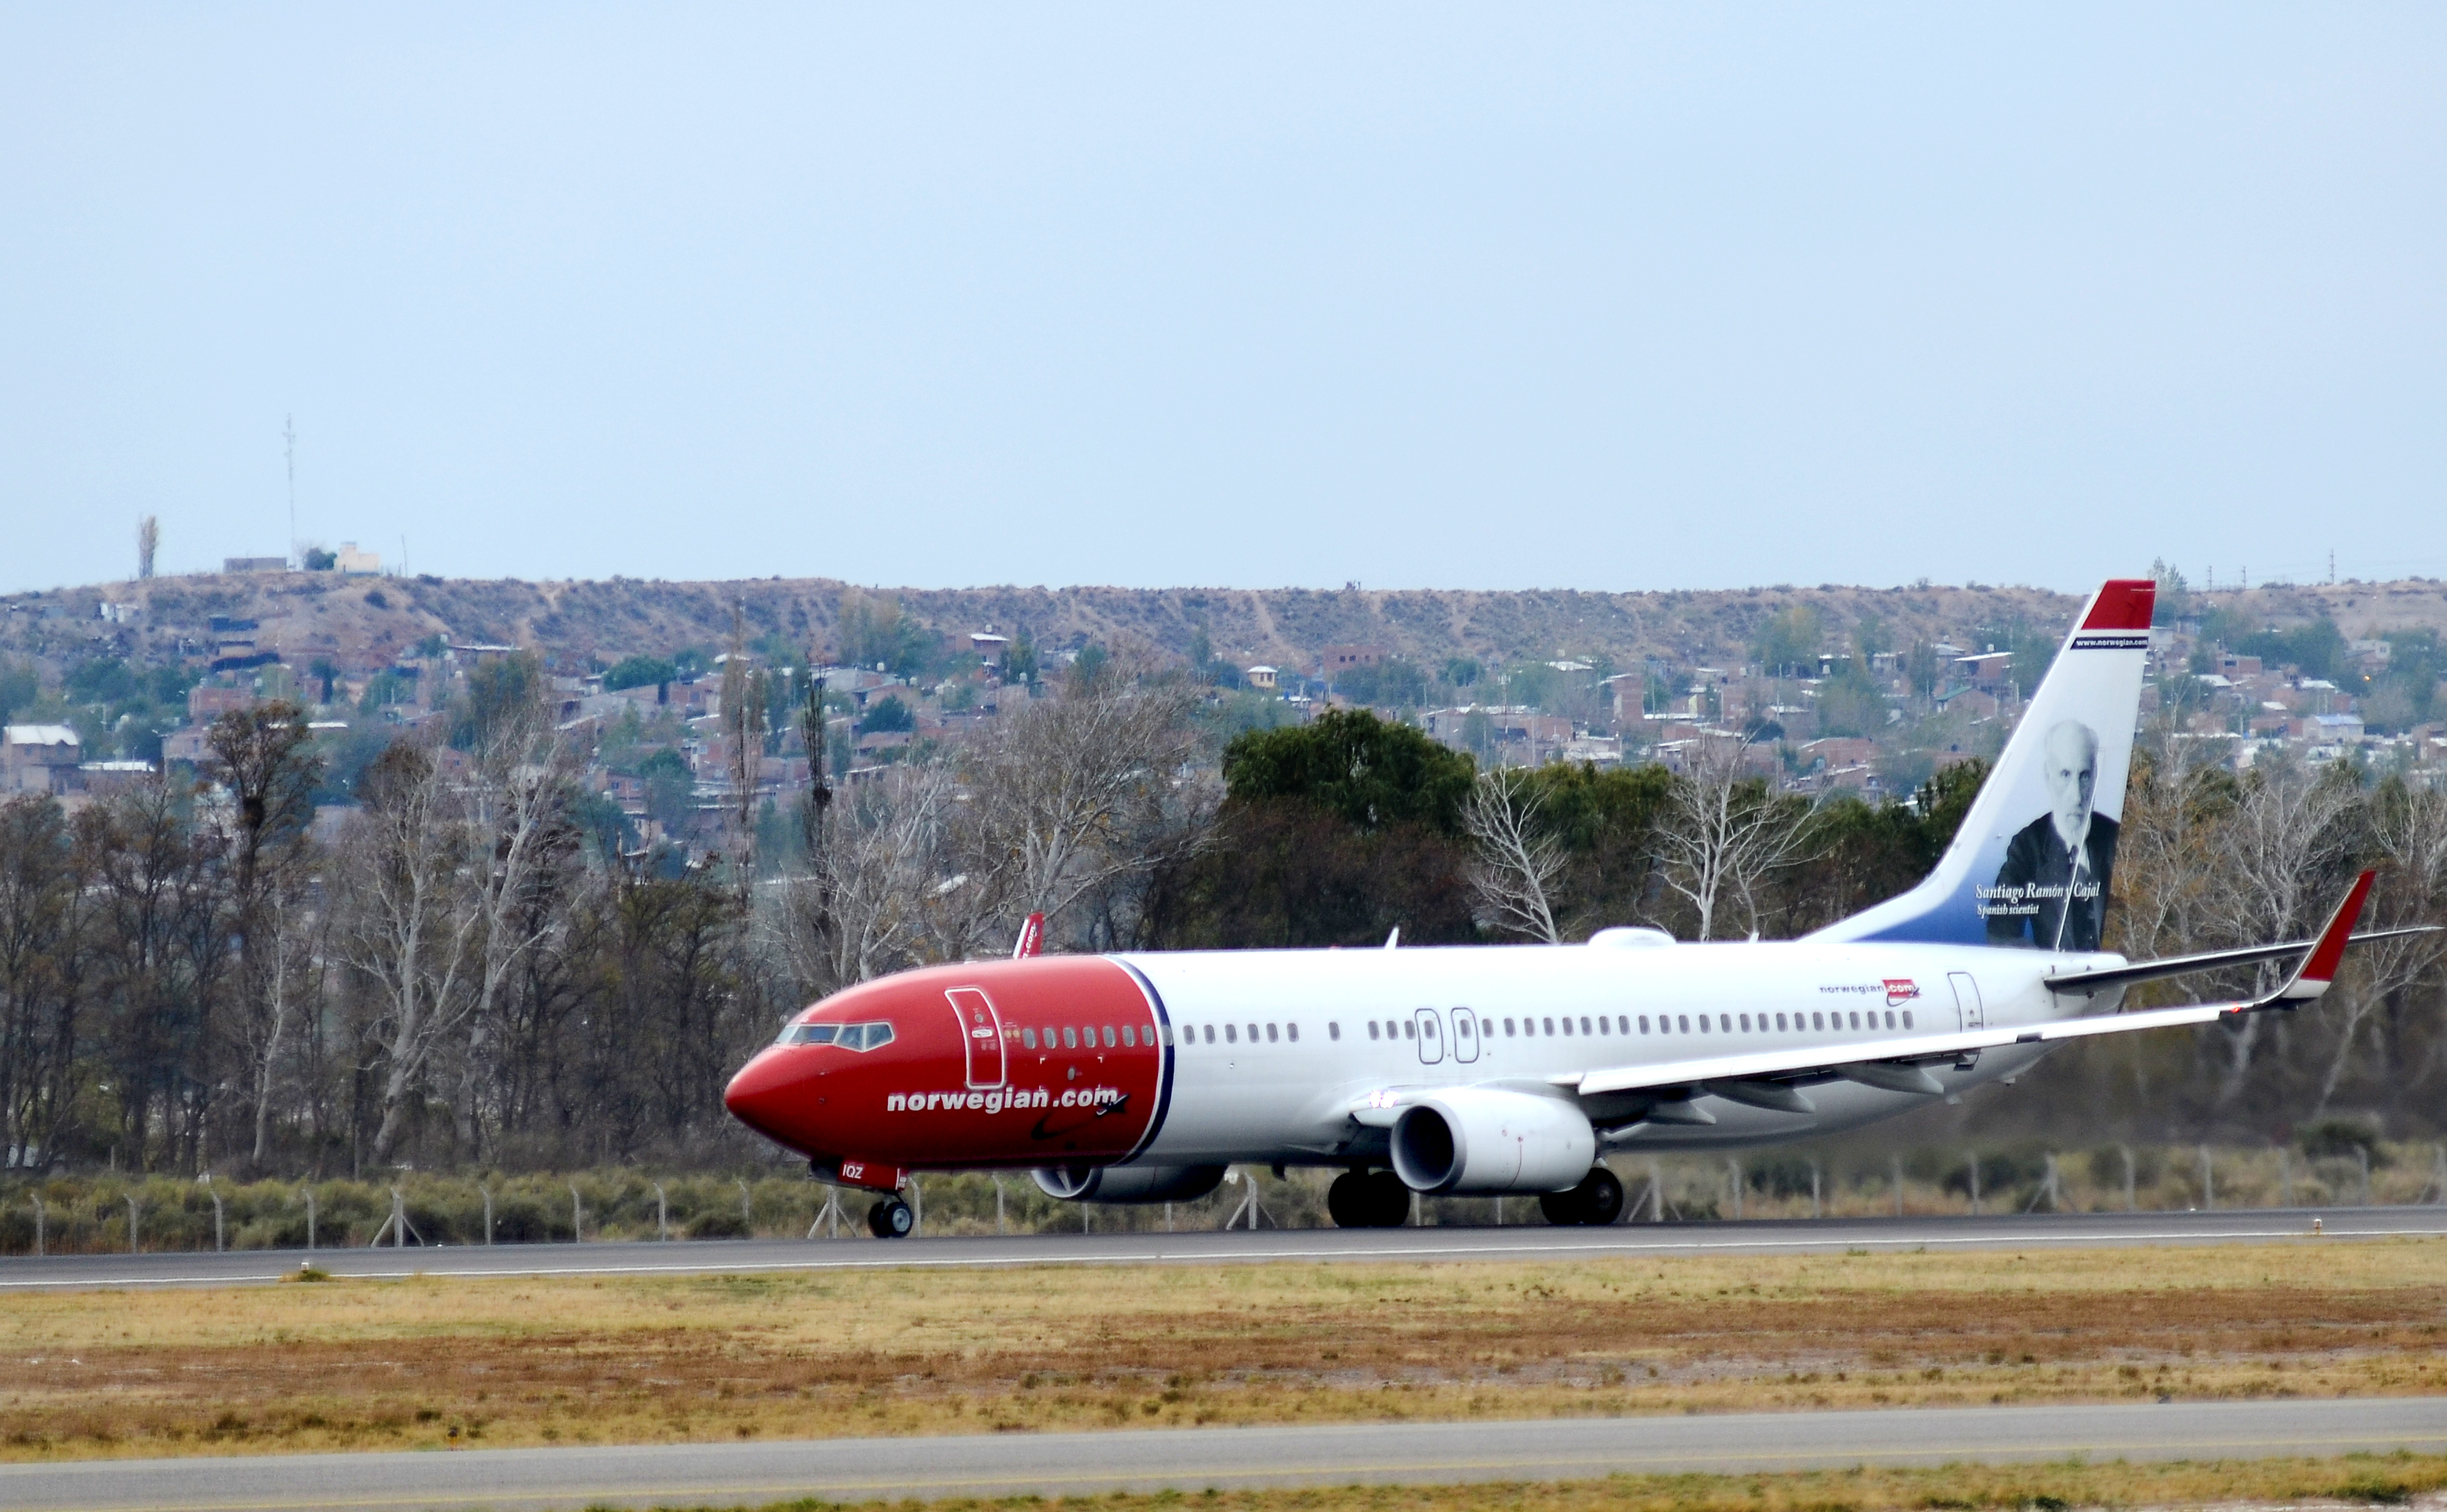 El hecho ocurrió durante un vuelo de la empresa Norwegian hacia Neuquén. (Foto: Archivo.-)